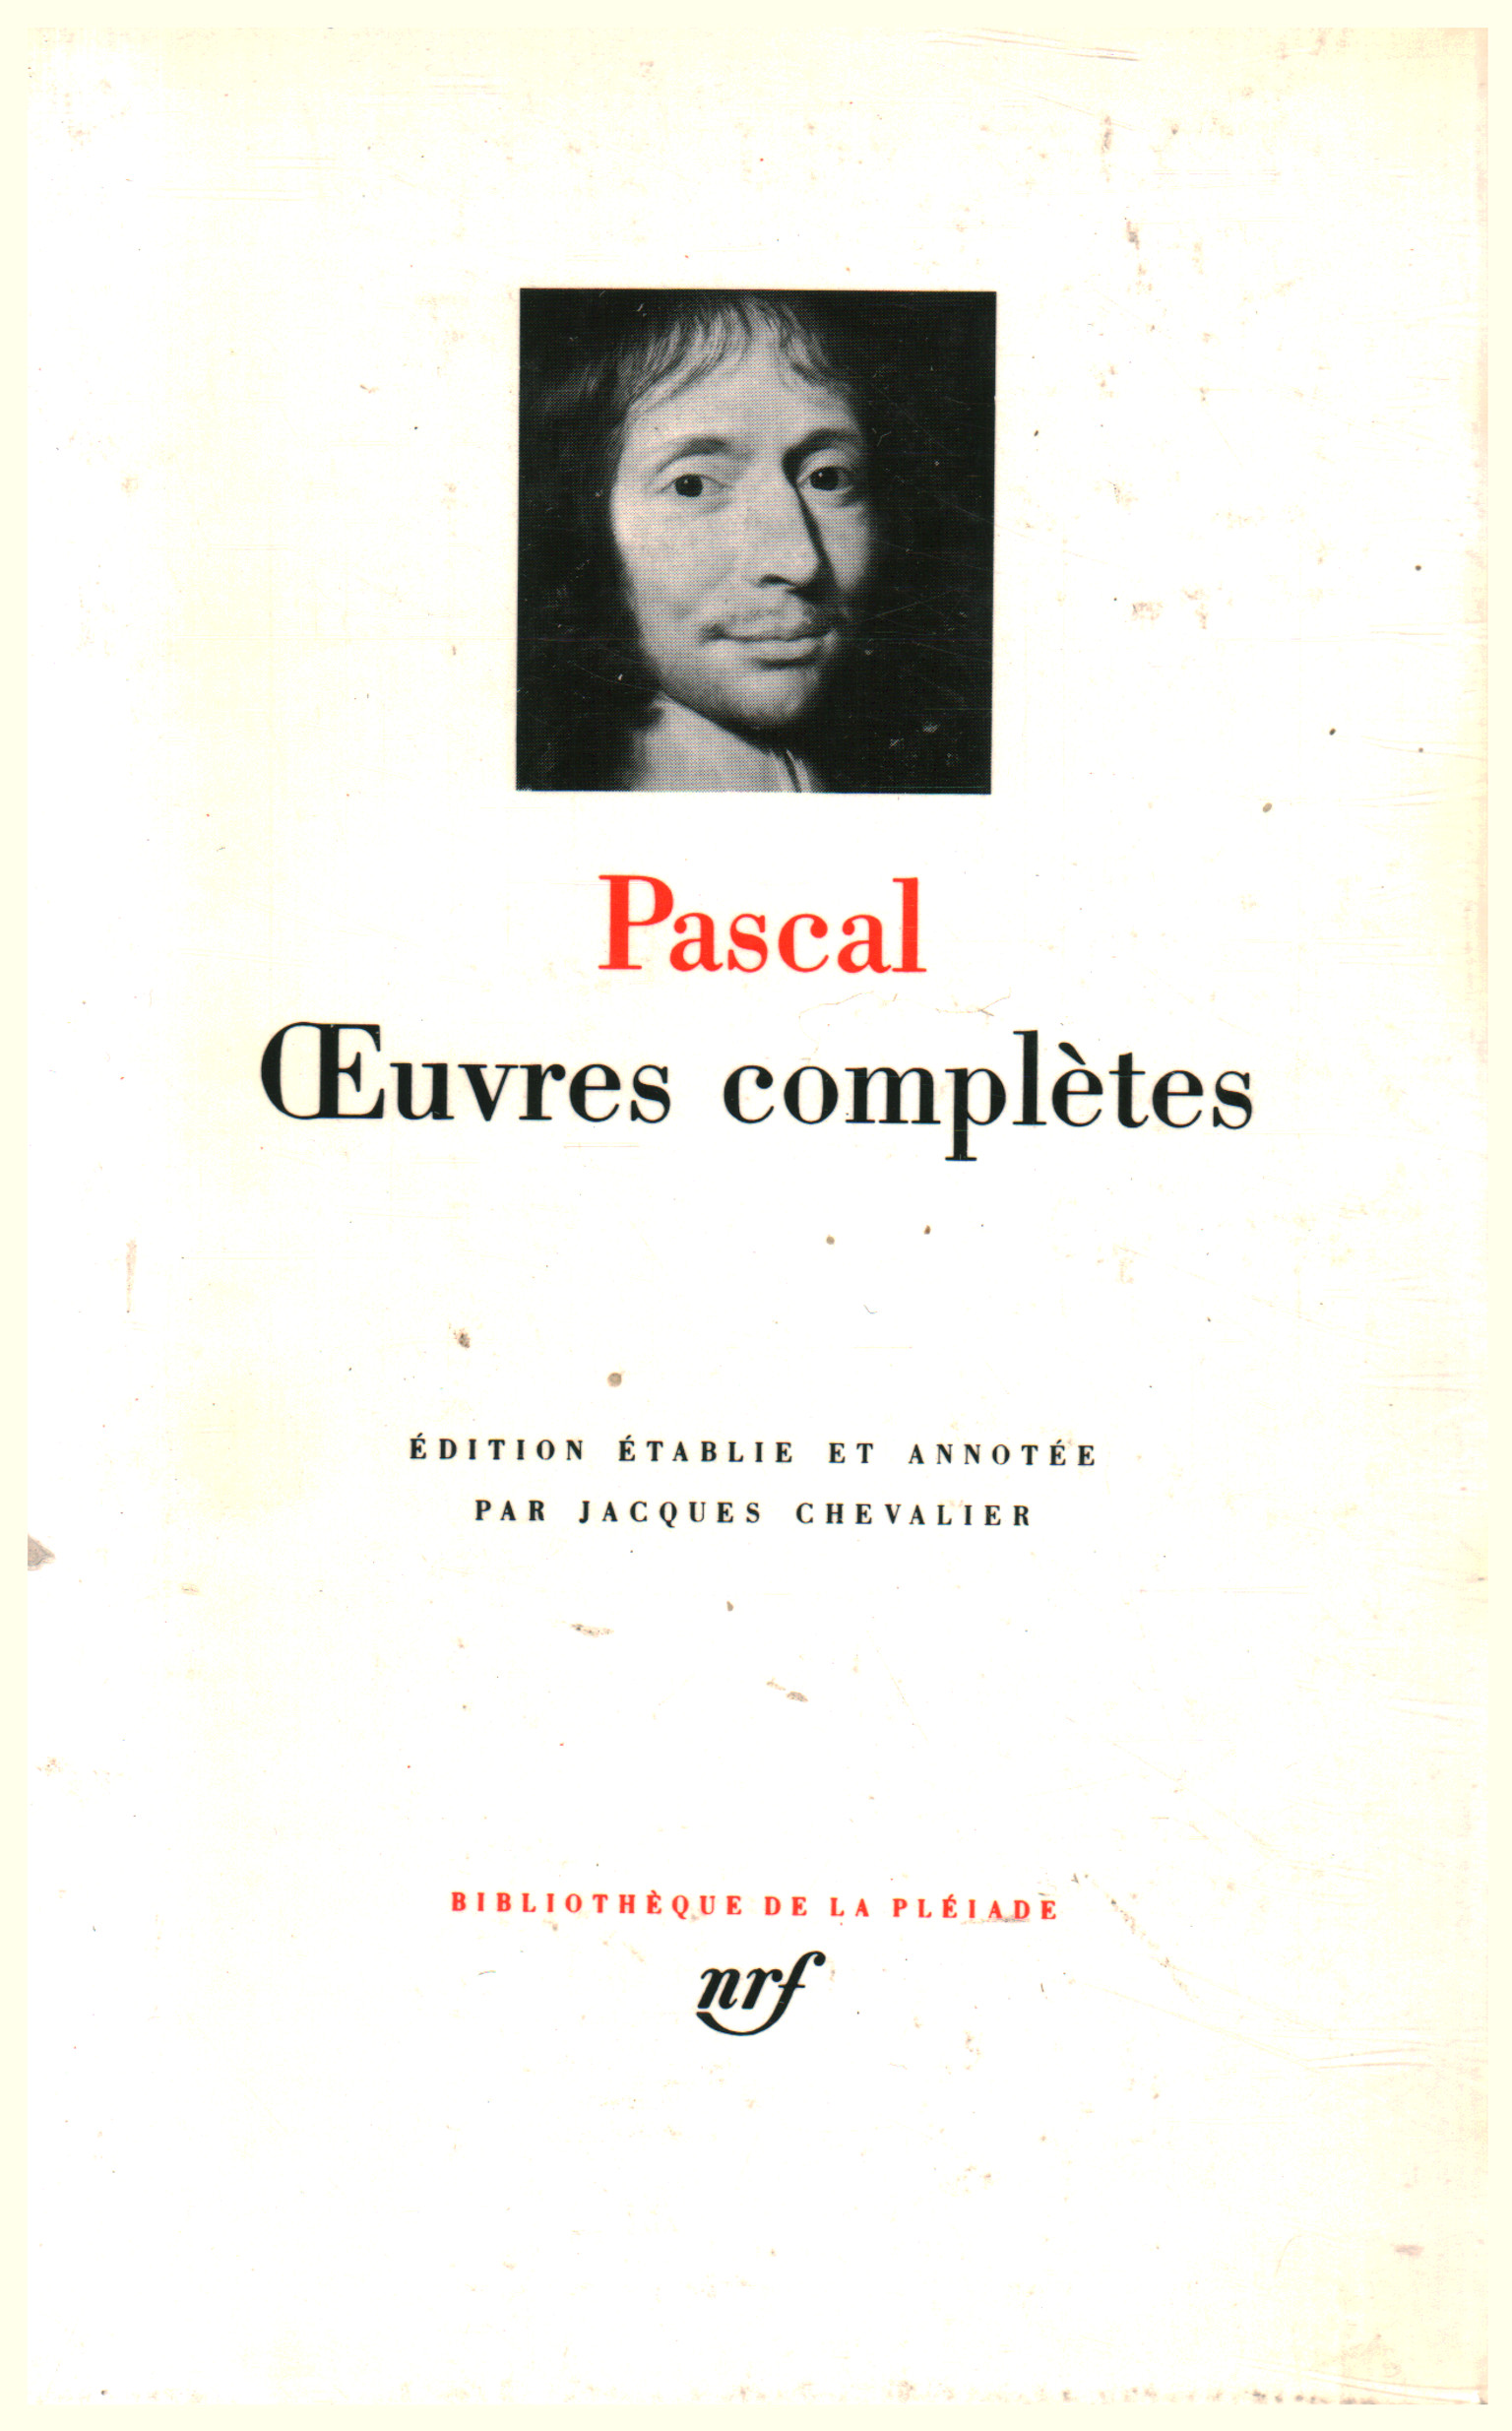 Ceuvres complètes, Pascal